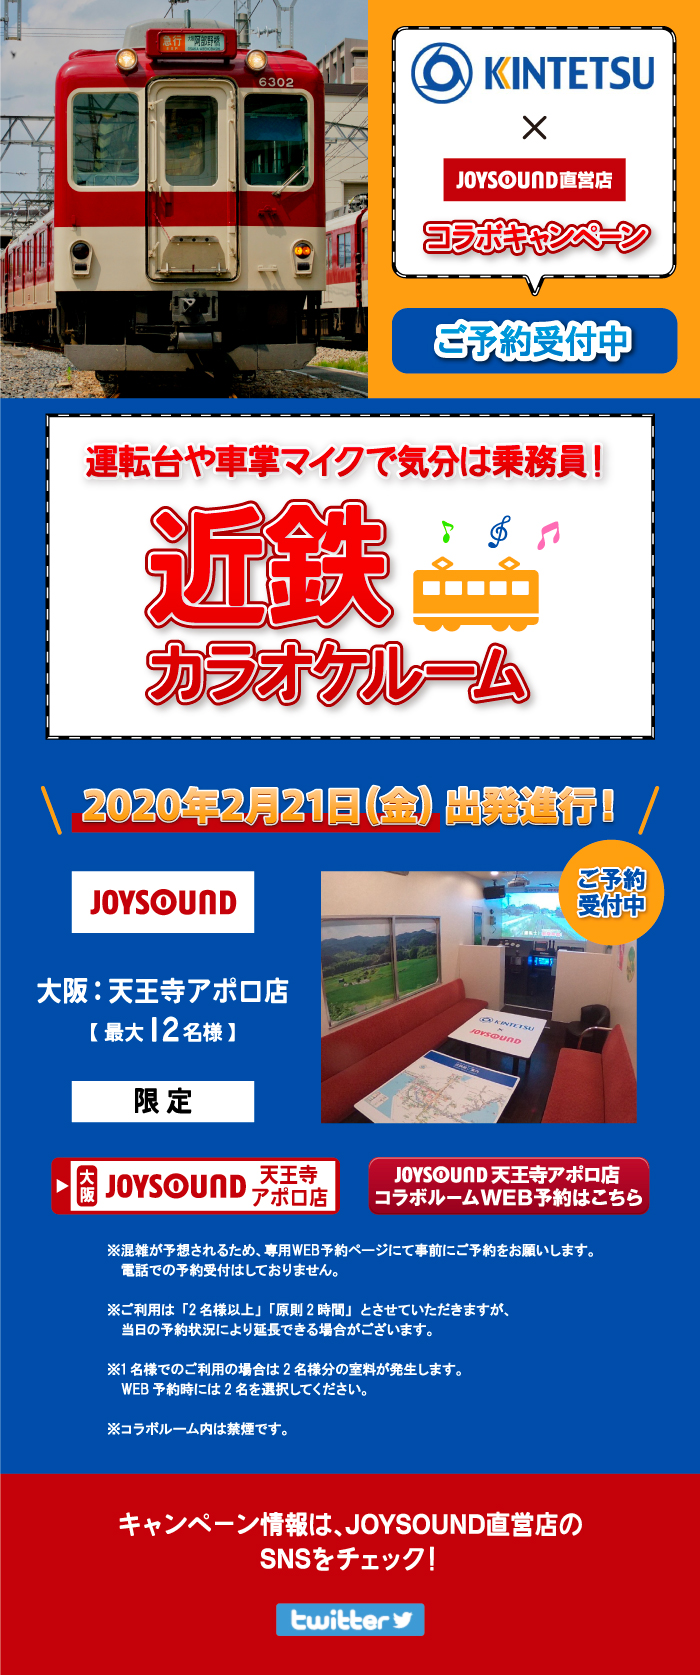 近畿日本鉄道 Joysound直営店コラボキャンペーン カラオケ Joysound直営店 ジョイサウンド ネット予約受付中